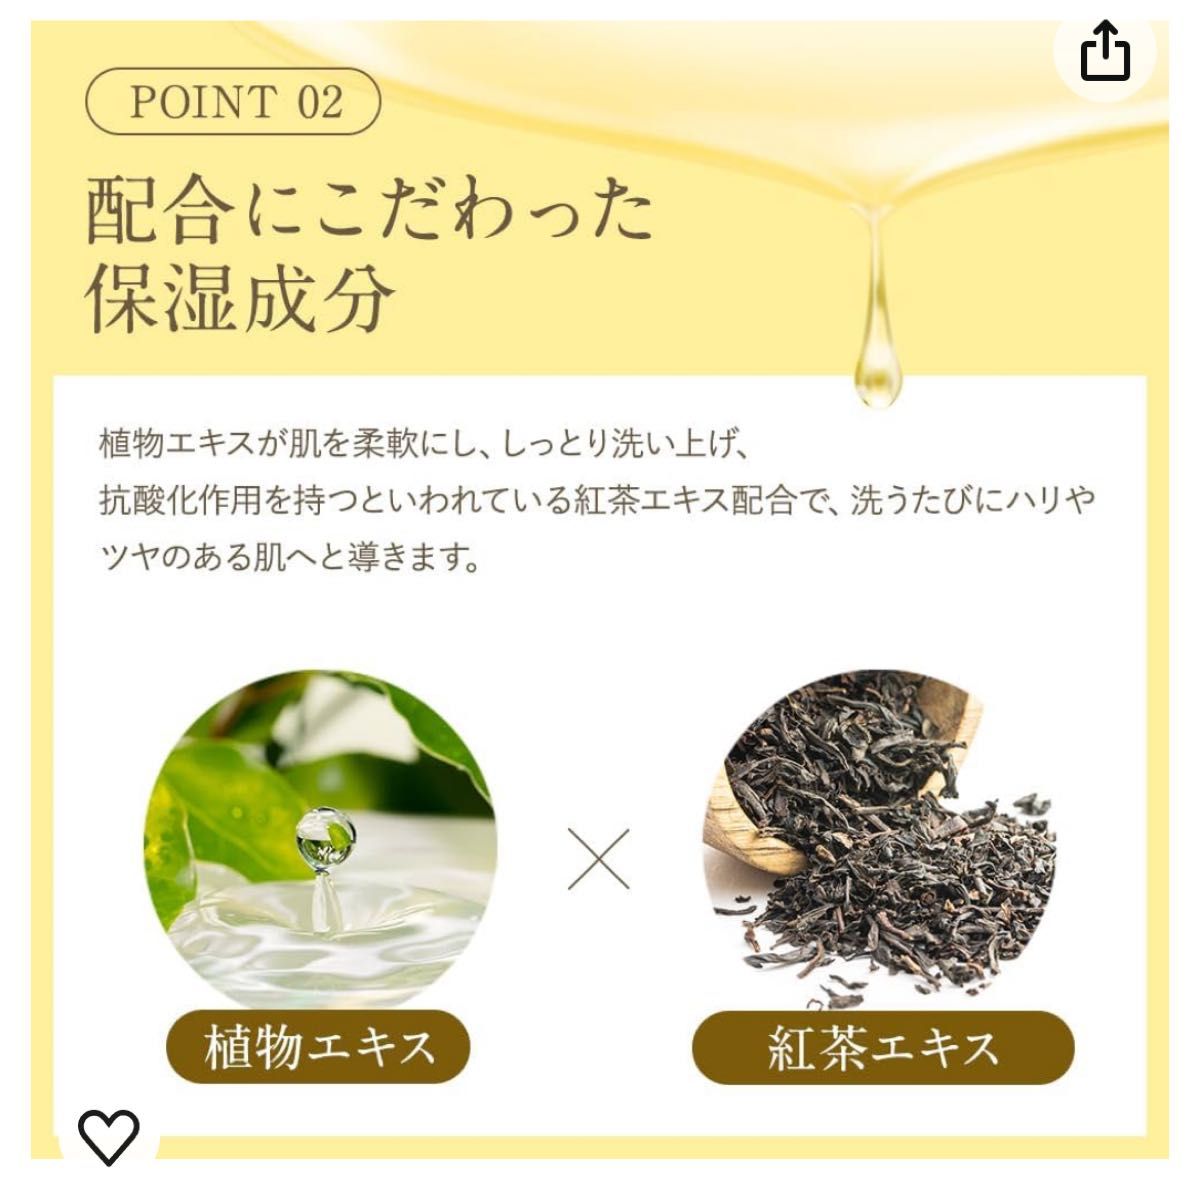 【新品】2個ボディソープ精油配合ナチュラルな香りレモン&ハニー300ml 